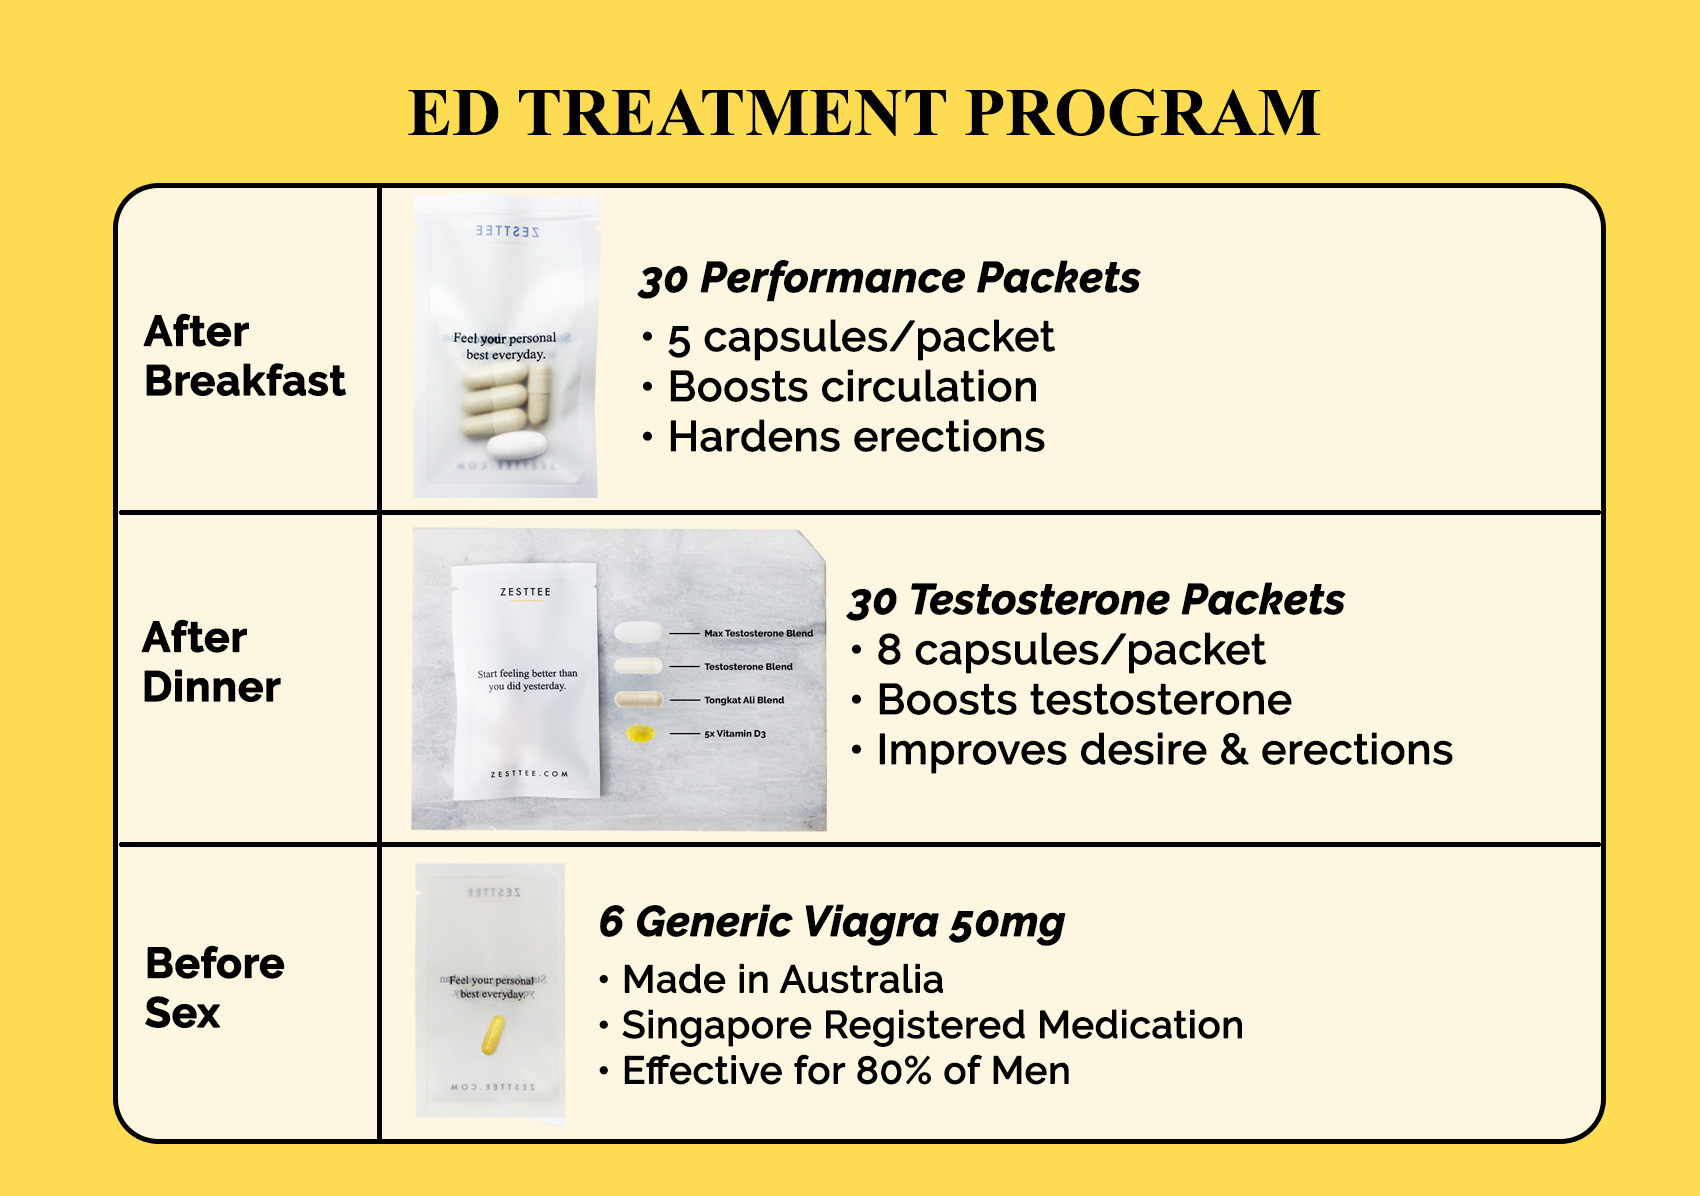 https://media.zesttee.com/cms/global-ed-treatment-program_12696-a.jpg